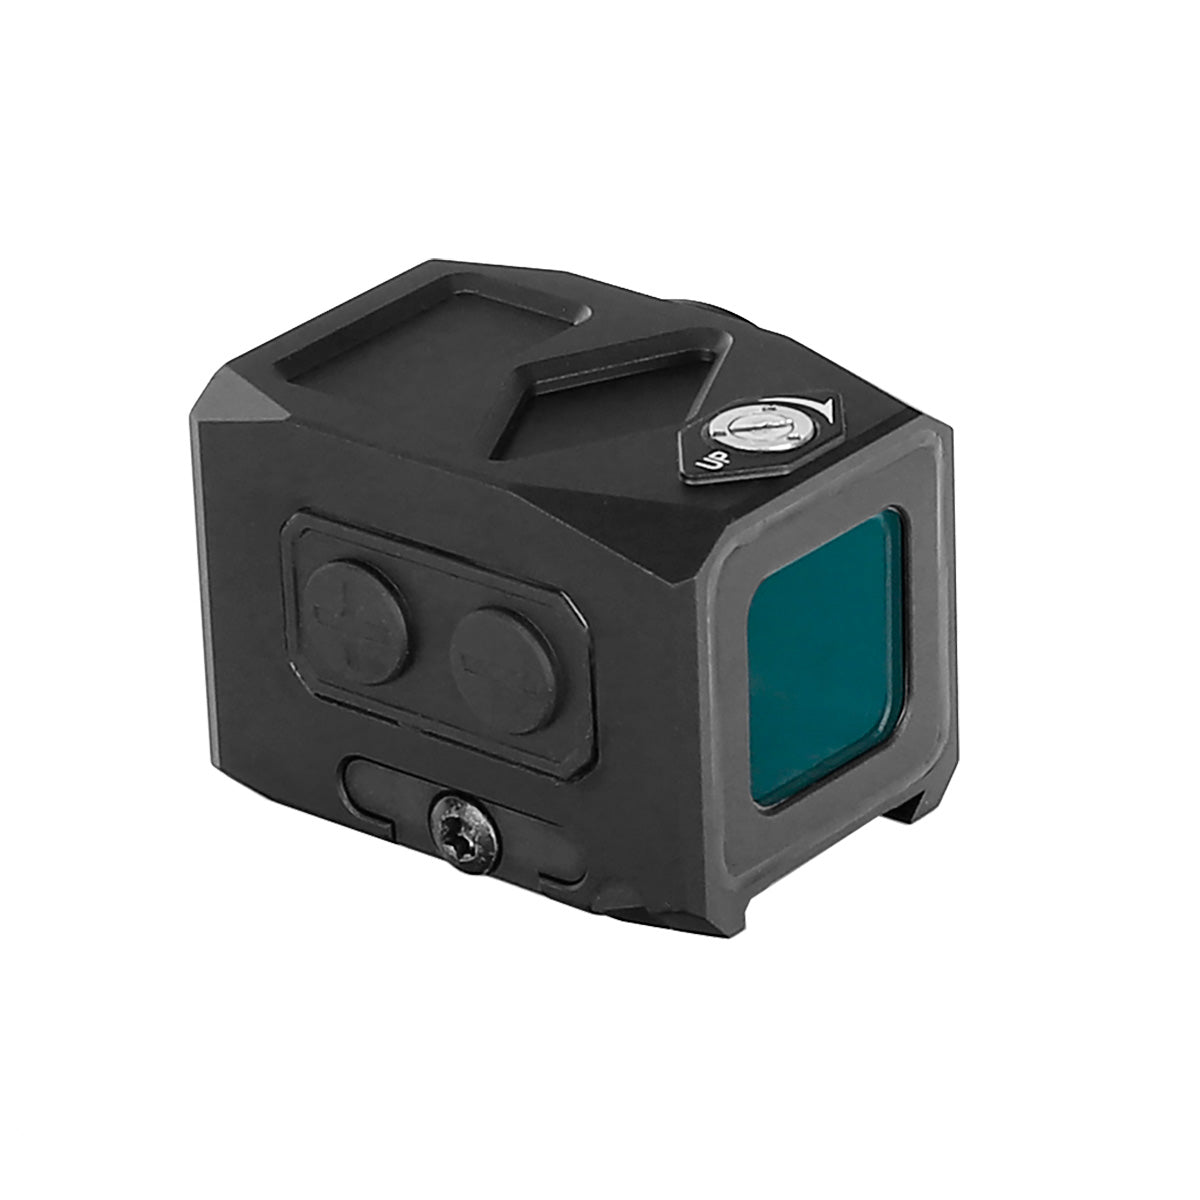 Reflex Shake Awake Auto Light Sensor 3 MOA Red Dot Sight IPX7 Waterpoof